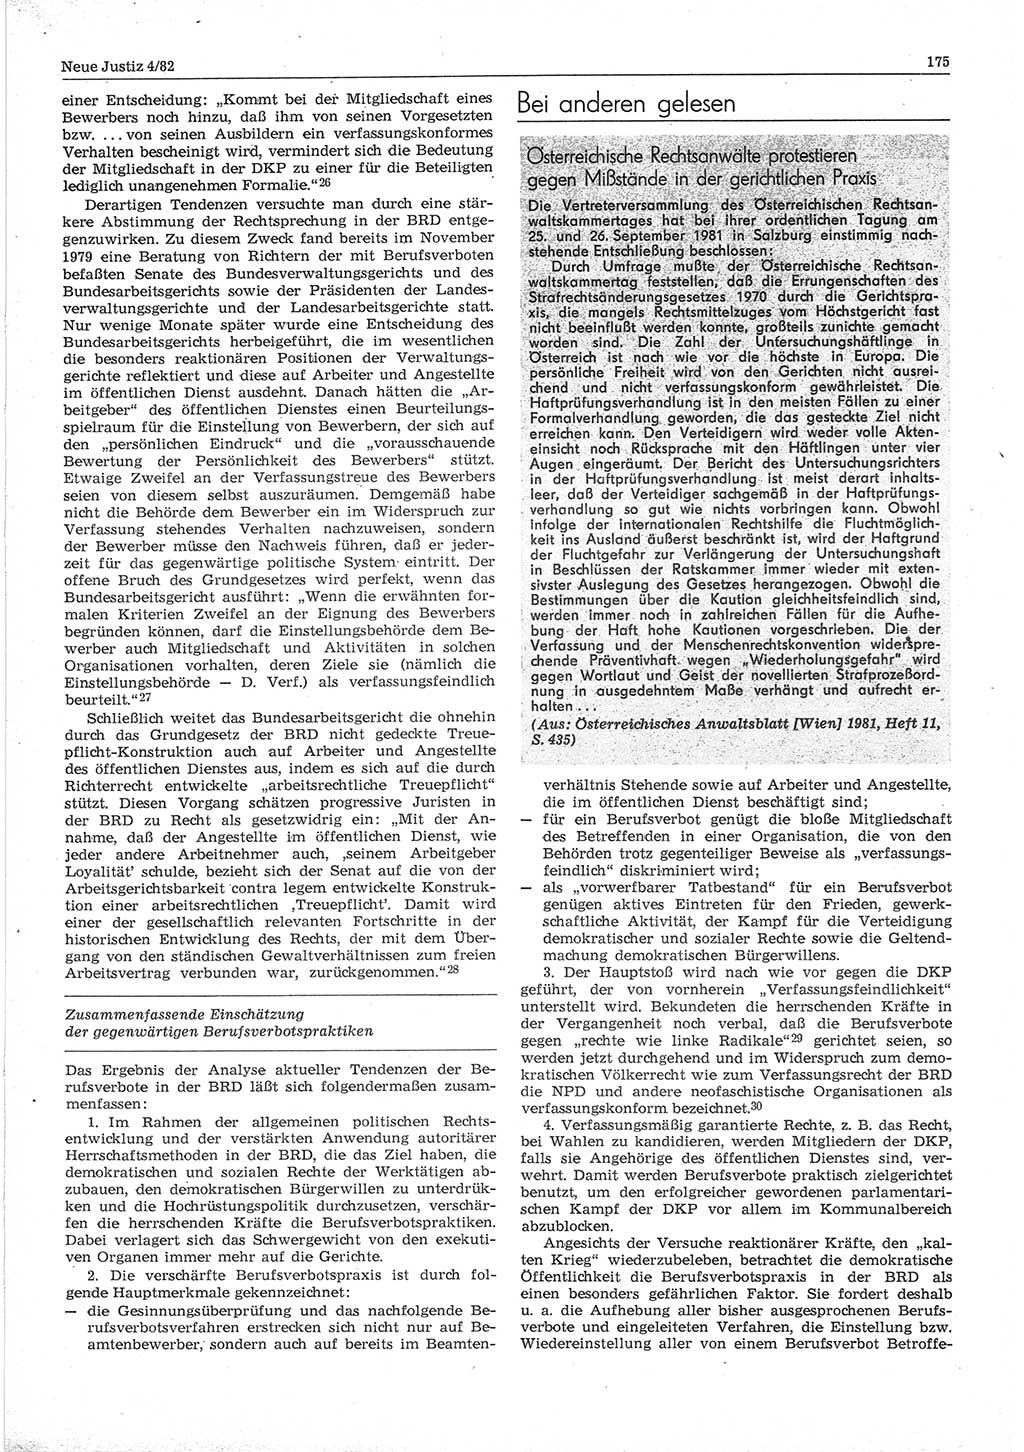 Neue Justiz (NJ), Zeitschrift für sozialistisches Recht und Gesetzlichkeit [Deutsche Demokratische Republik (DDR)], 36. Jahrgang 1982, Seite 175 (NJ DDR 1982, S. 175)